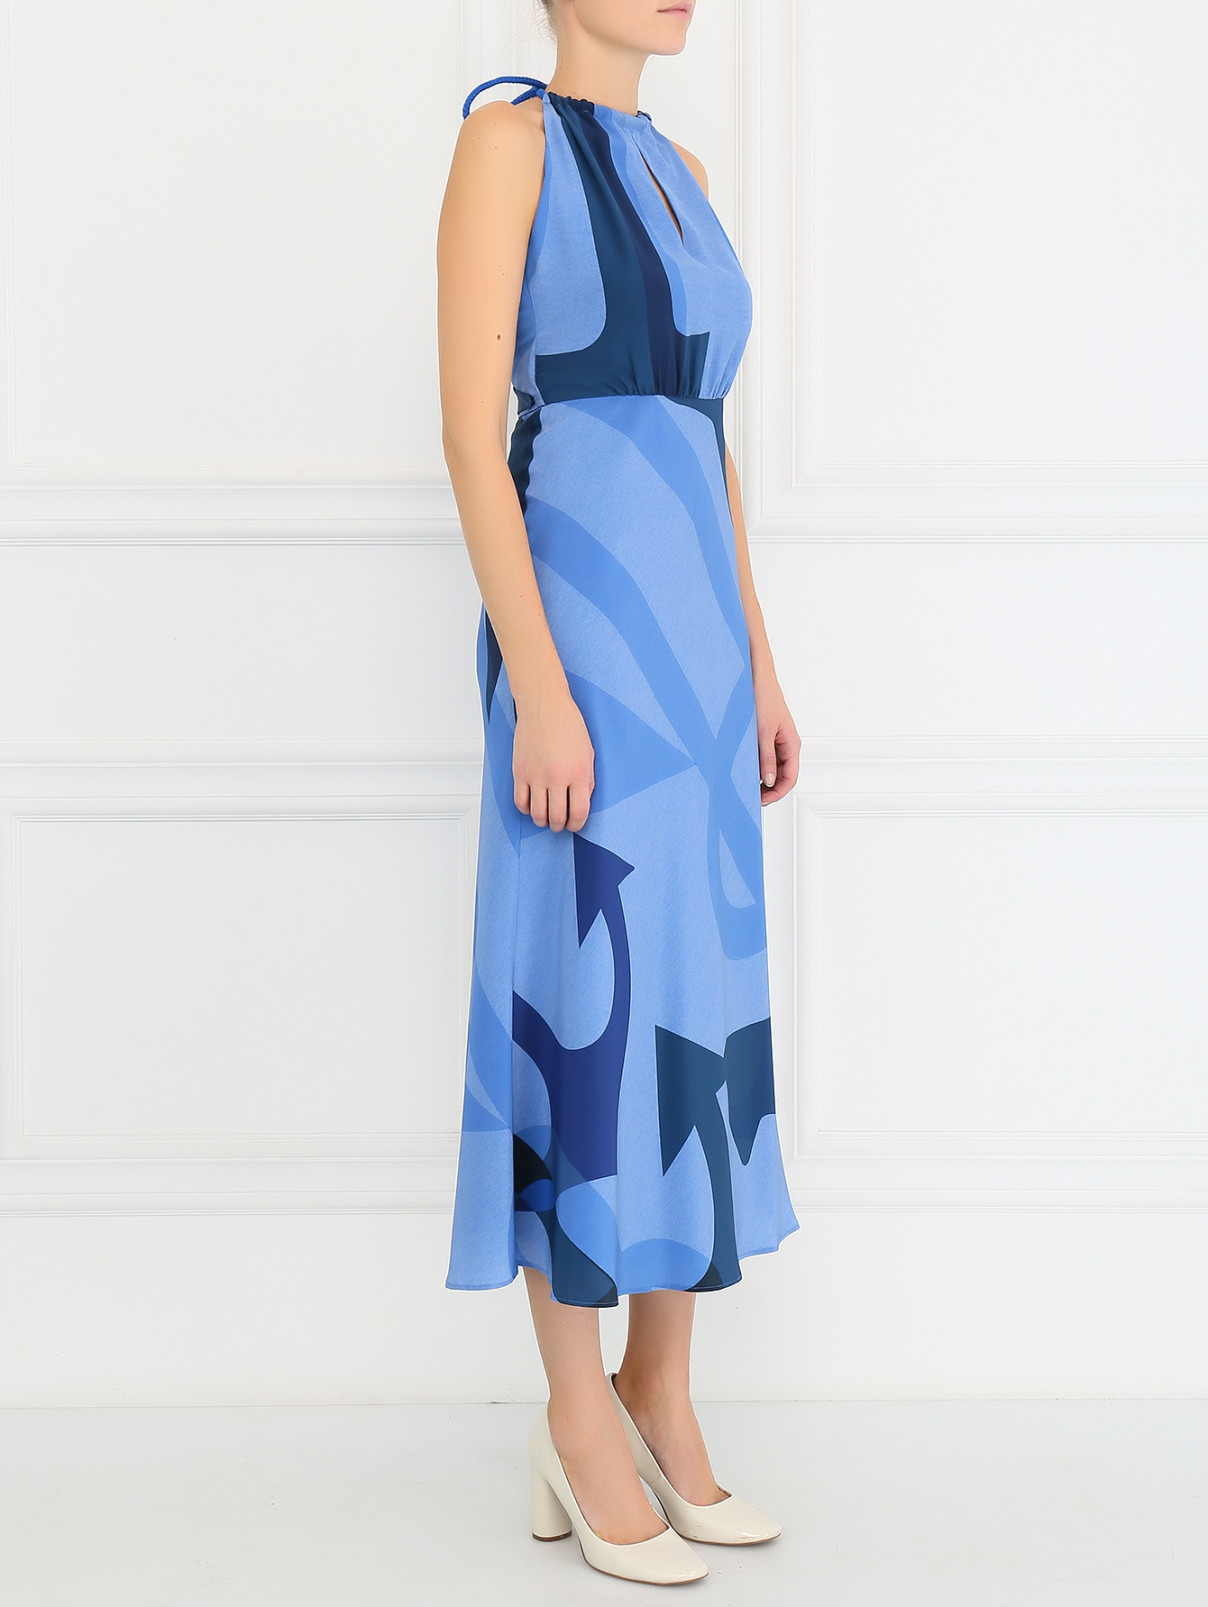 Платье из шелка с открытой спиной Max Mara  –  Модель Общий вид  – Цвет:  Синий